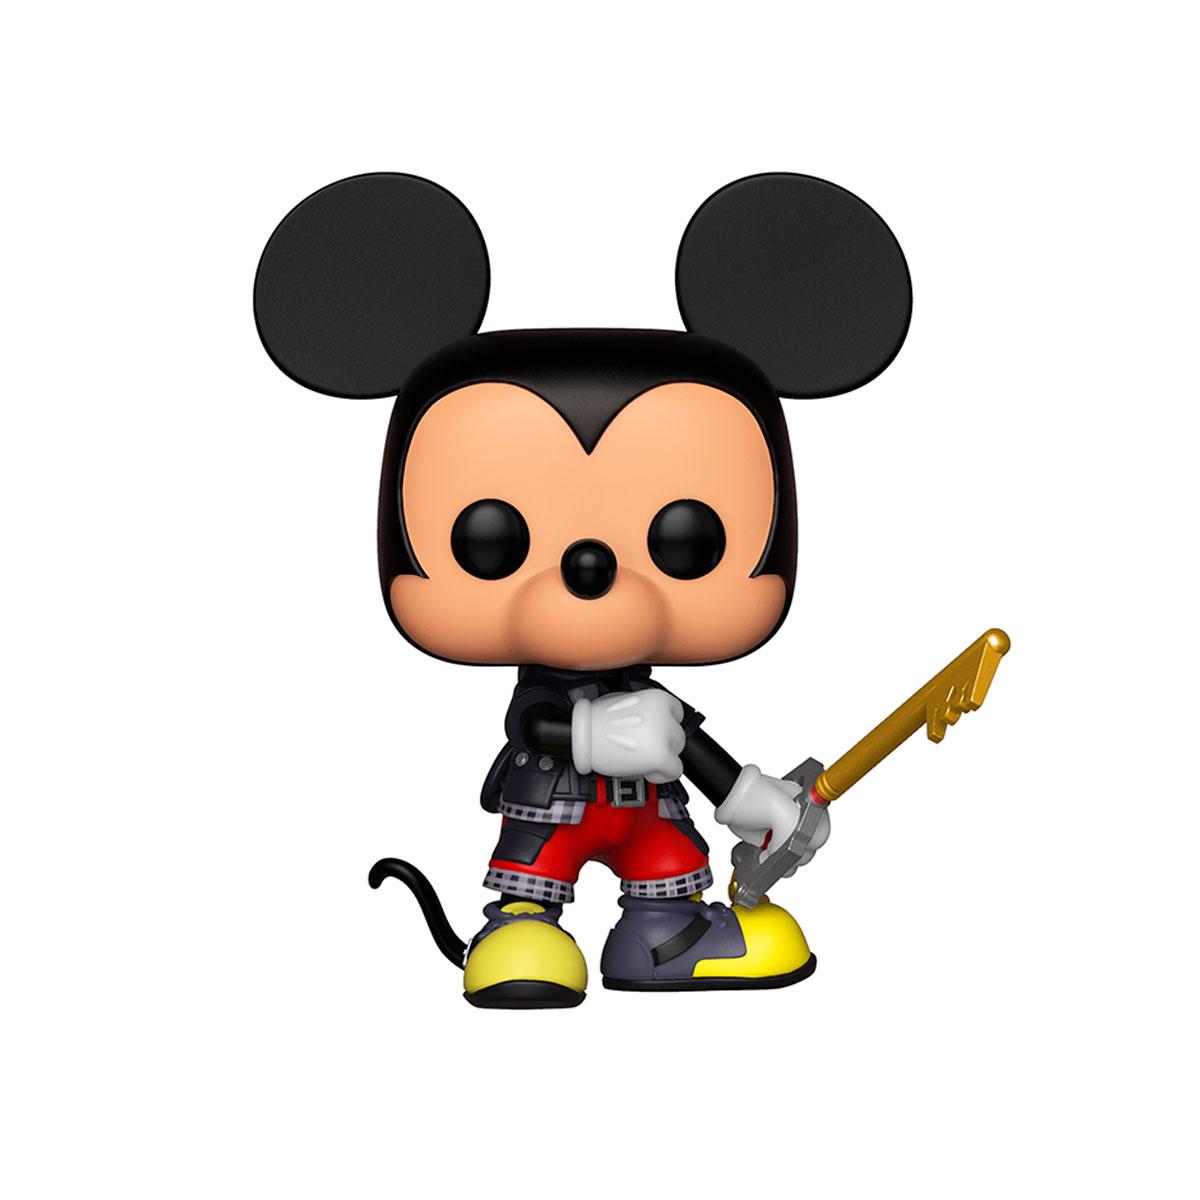 FUNKO POP! Ігрова фігурка серії "Kingdom Hearts 3" - MICKEY